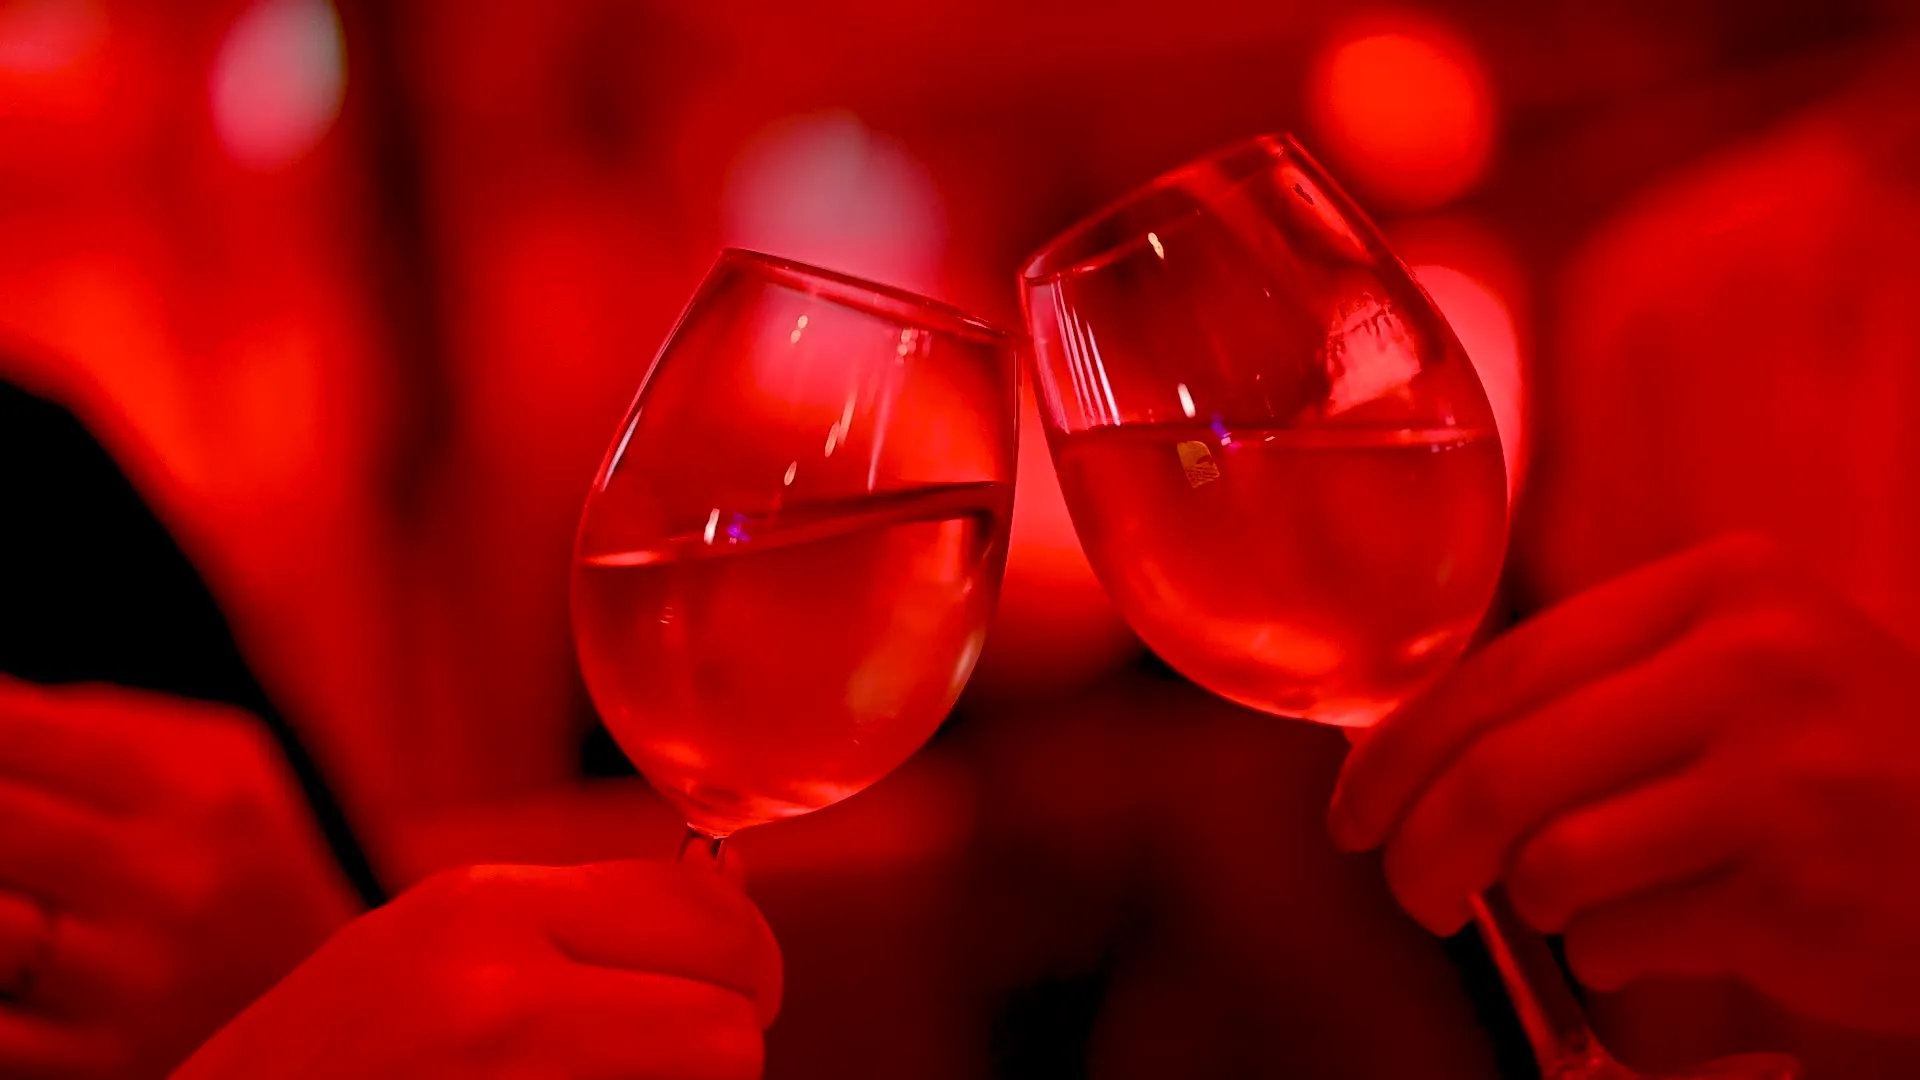 Zwei Personen stoßen mit einem Weinglas an. Wir sehen Gläser und Hände im Closeup.